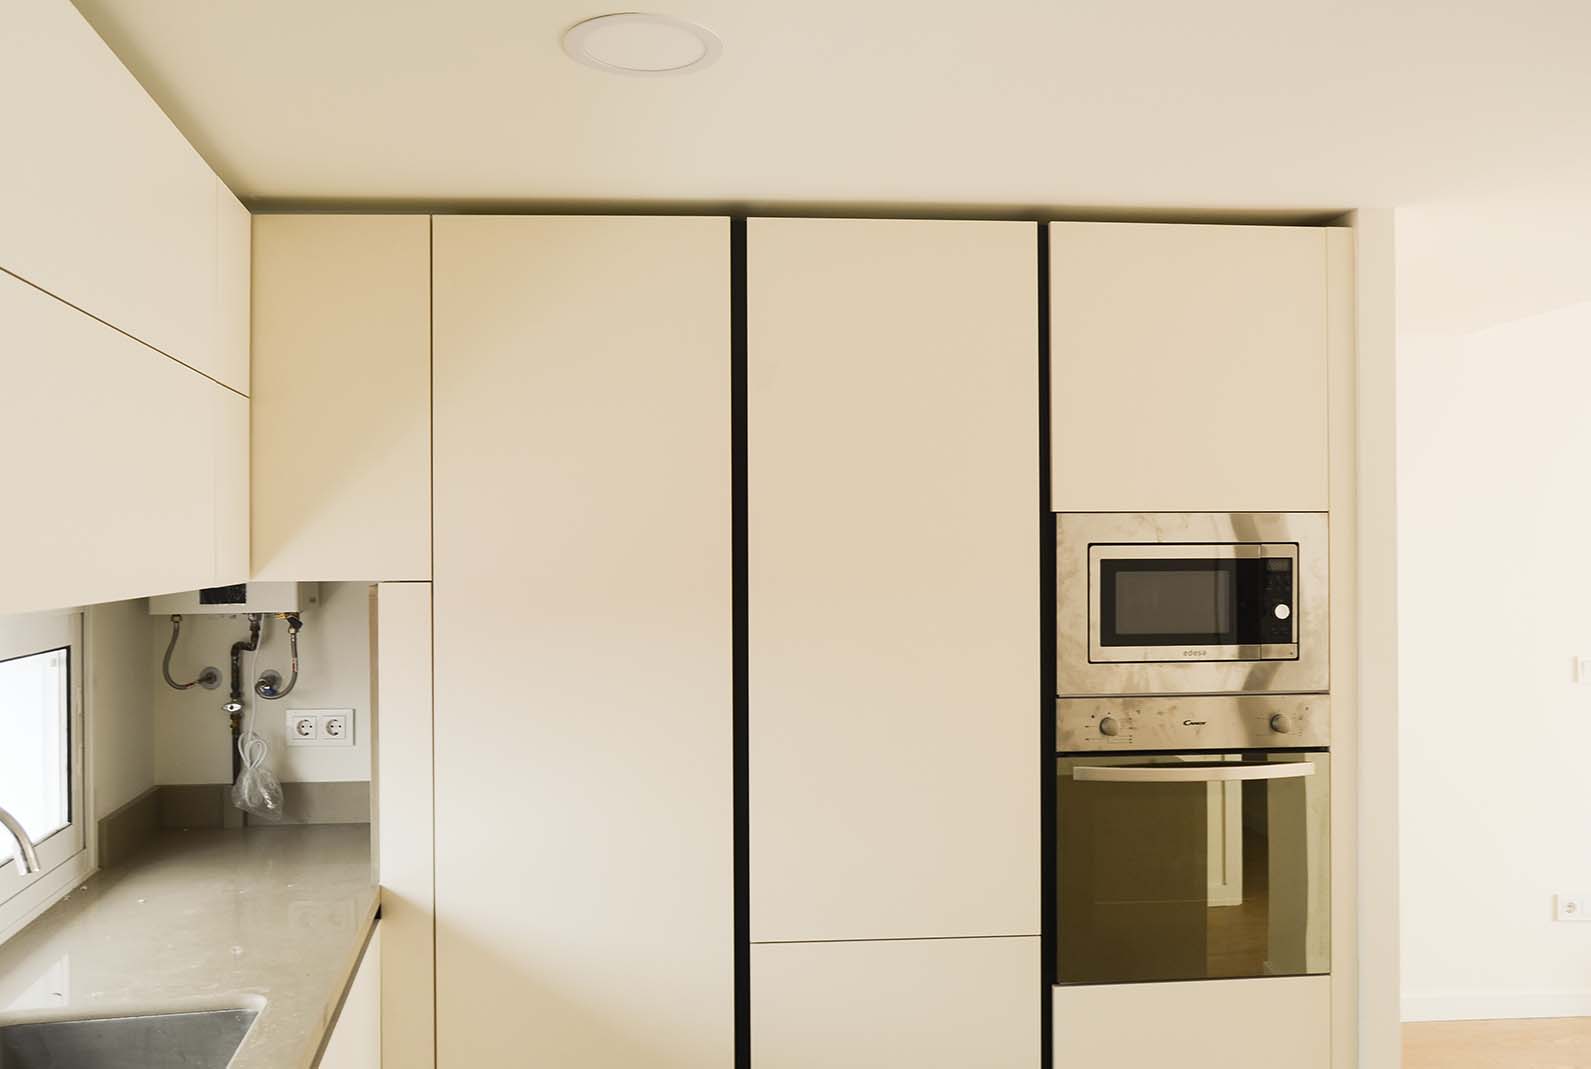 Todos los electrodomésticos se distribuyen en la cocina y son integrados, creando una imagen acorde al espacio en el que se inserta (salón-cocina)